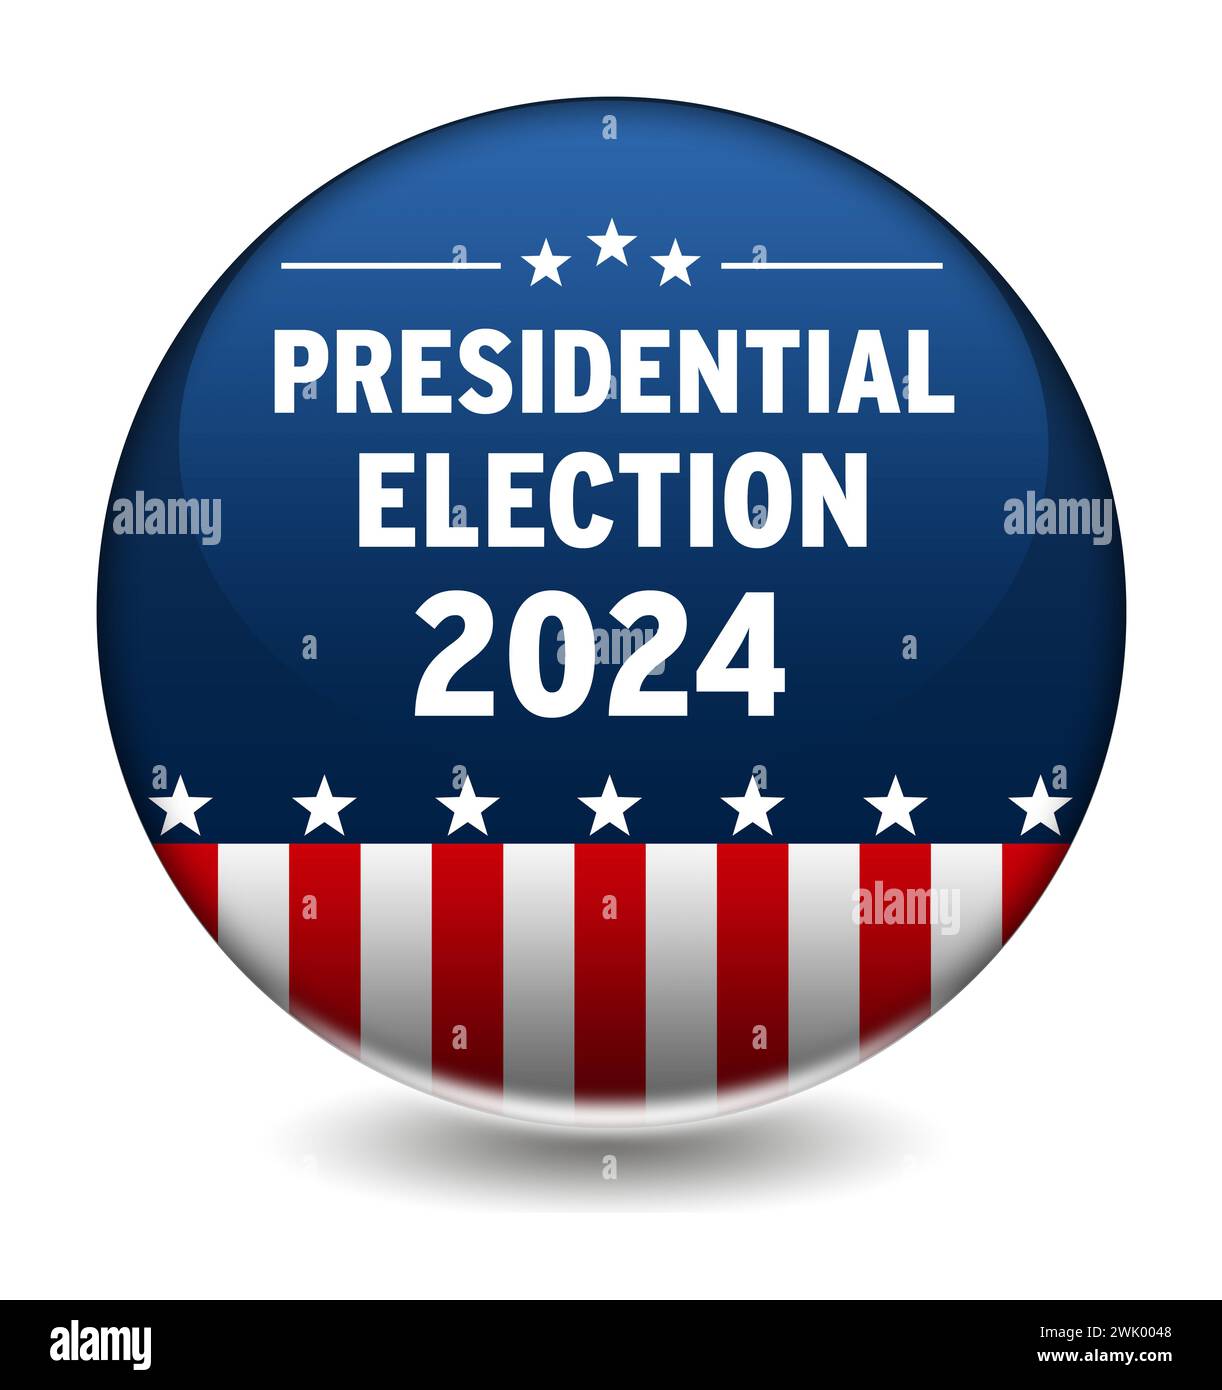 Élection présidentielle 2024 aux États-Unis - badge électoral Banque D'Images